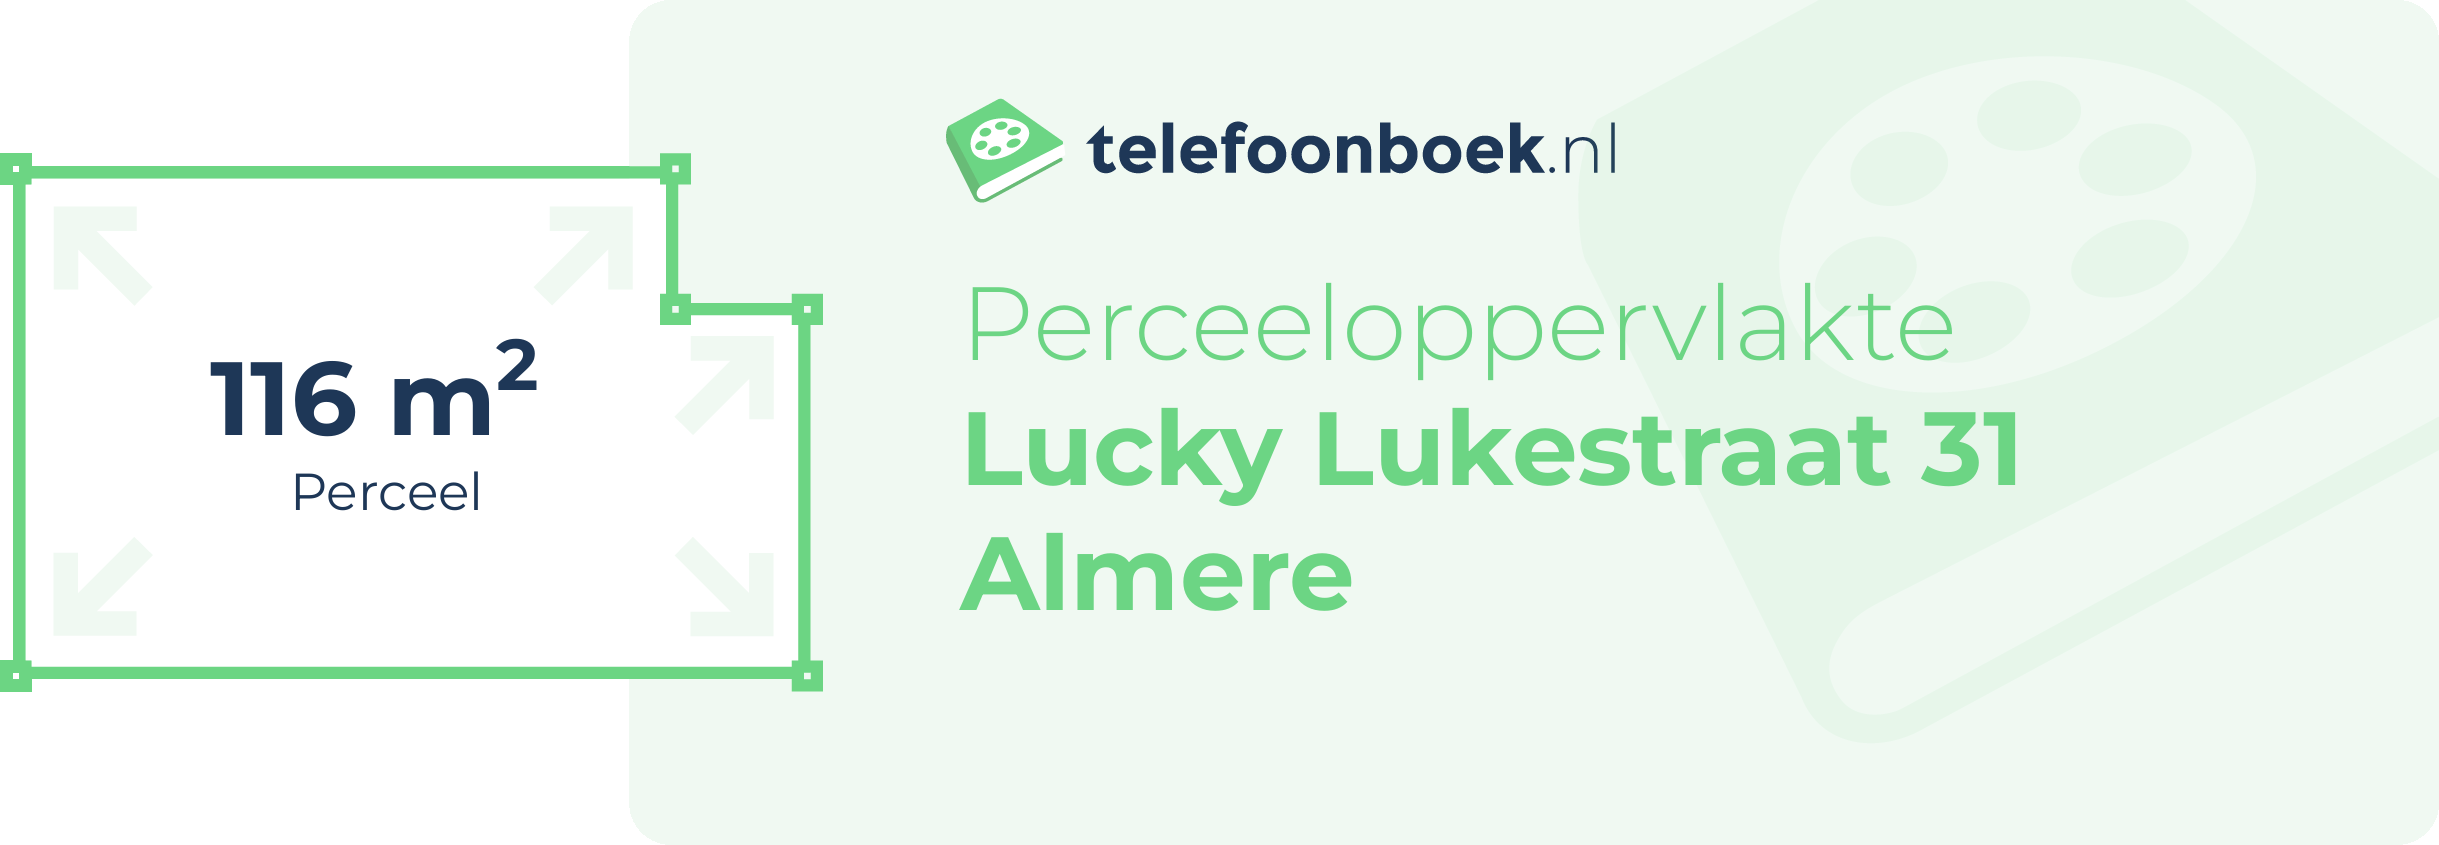 Perceeloppervlakte Lucky Lukestraat 31 Almere